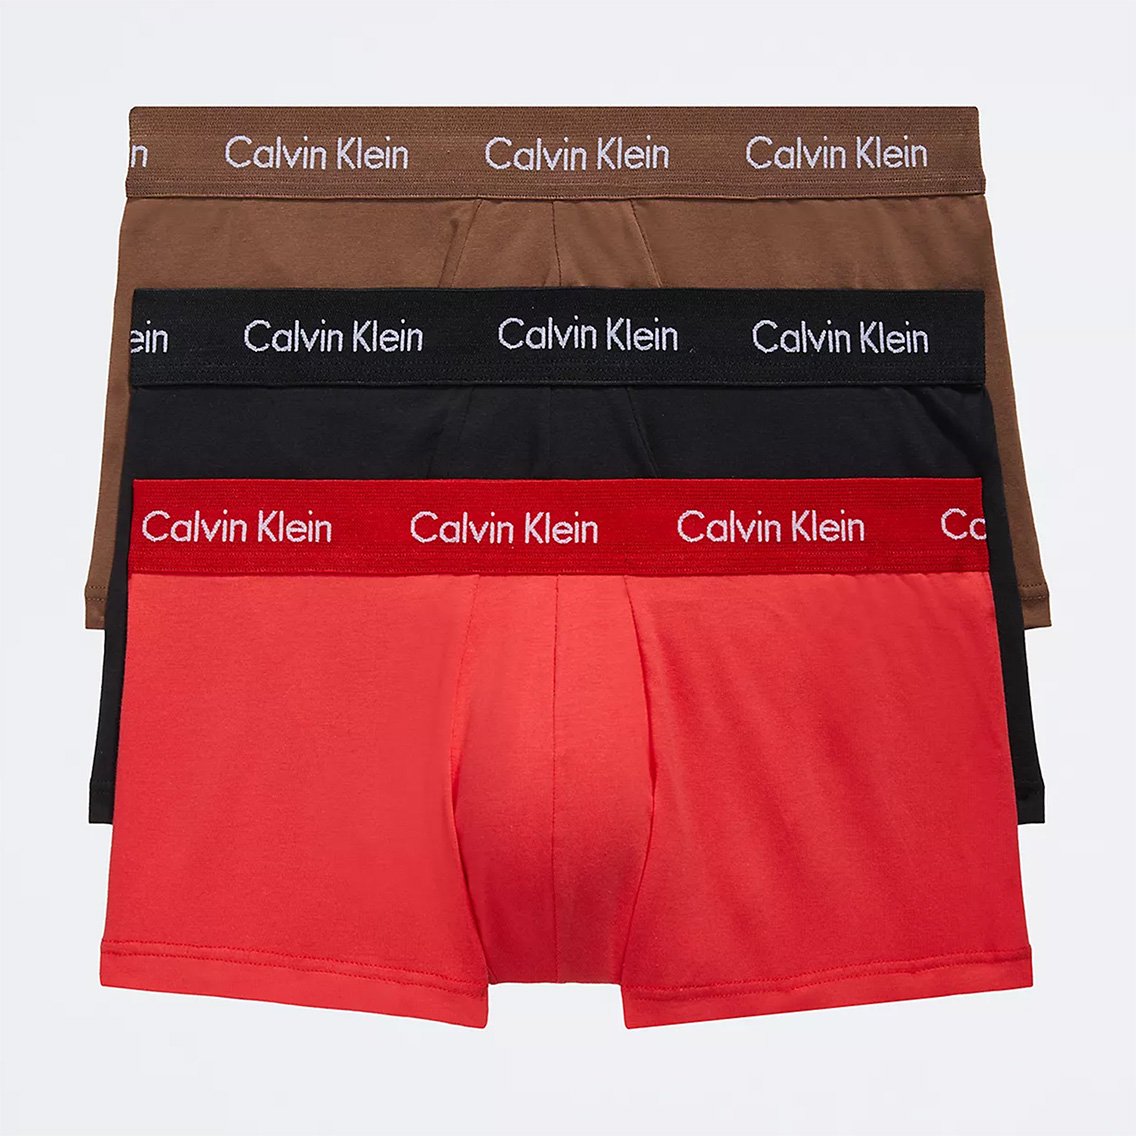 Calvin Klein(カルバンクライン)[NB2614-961]:ボクサーパンツ,男性下着 